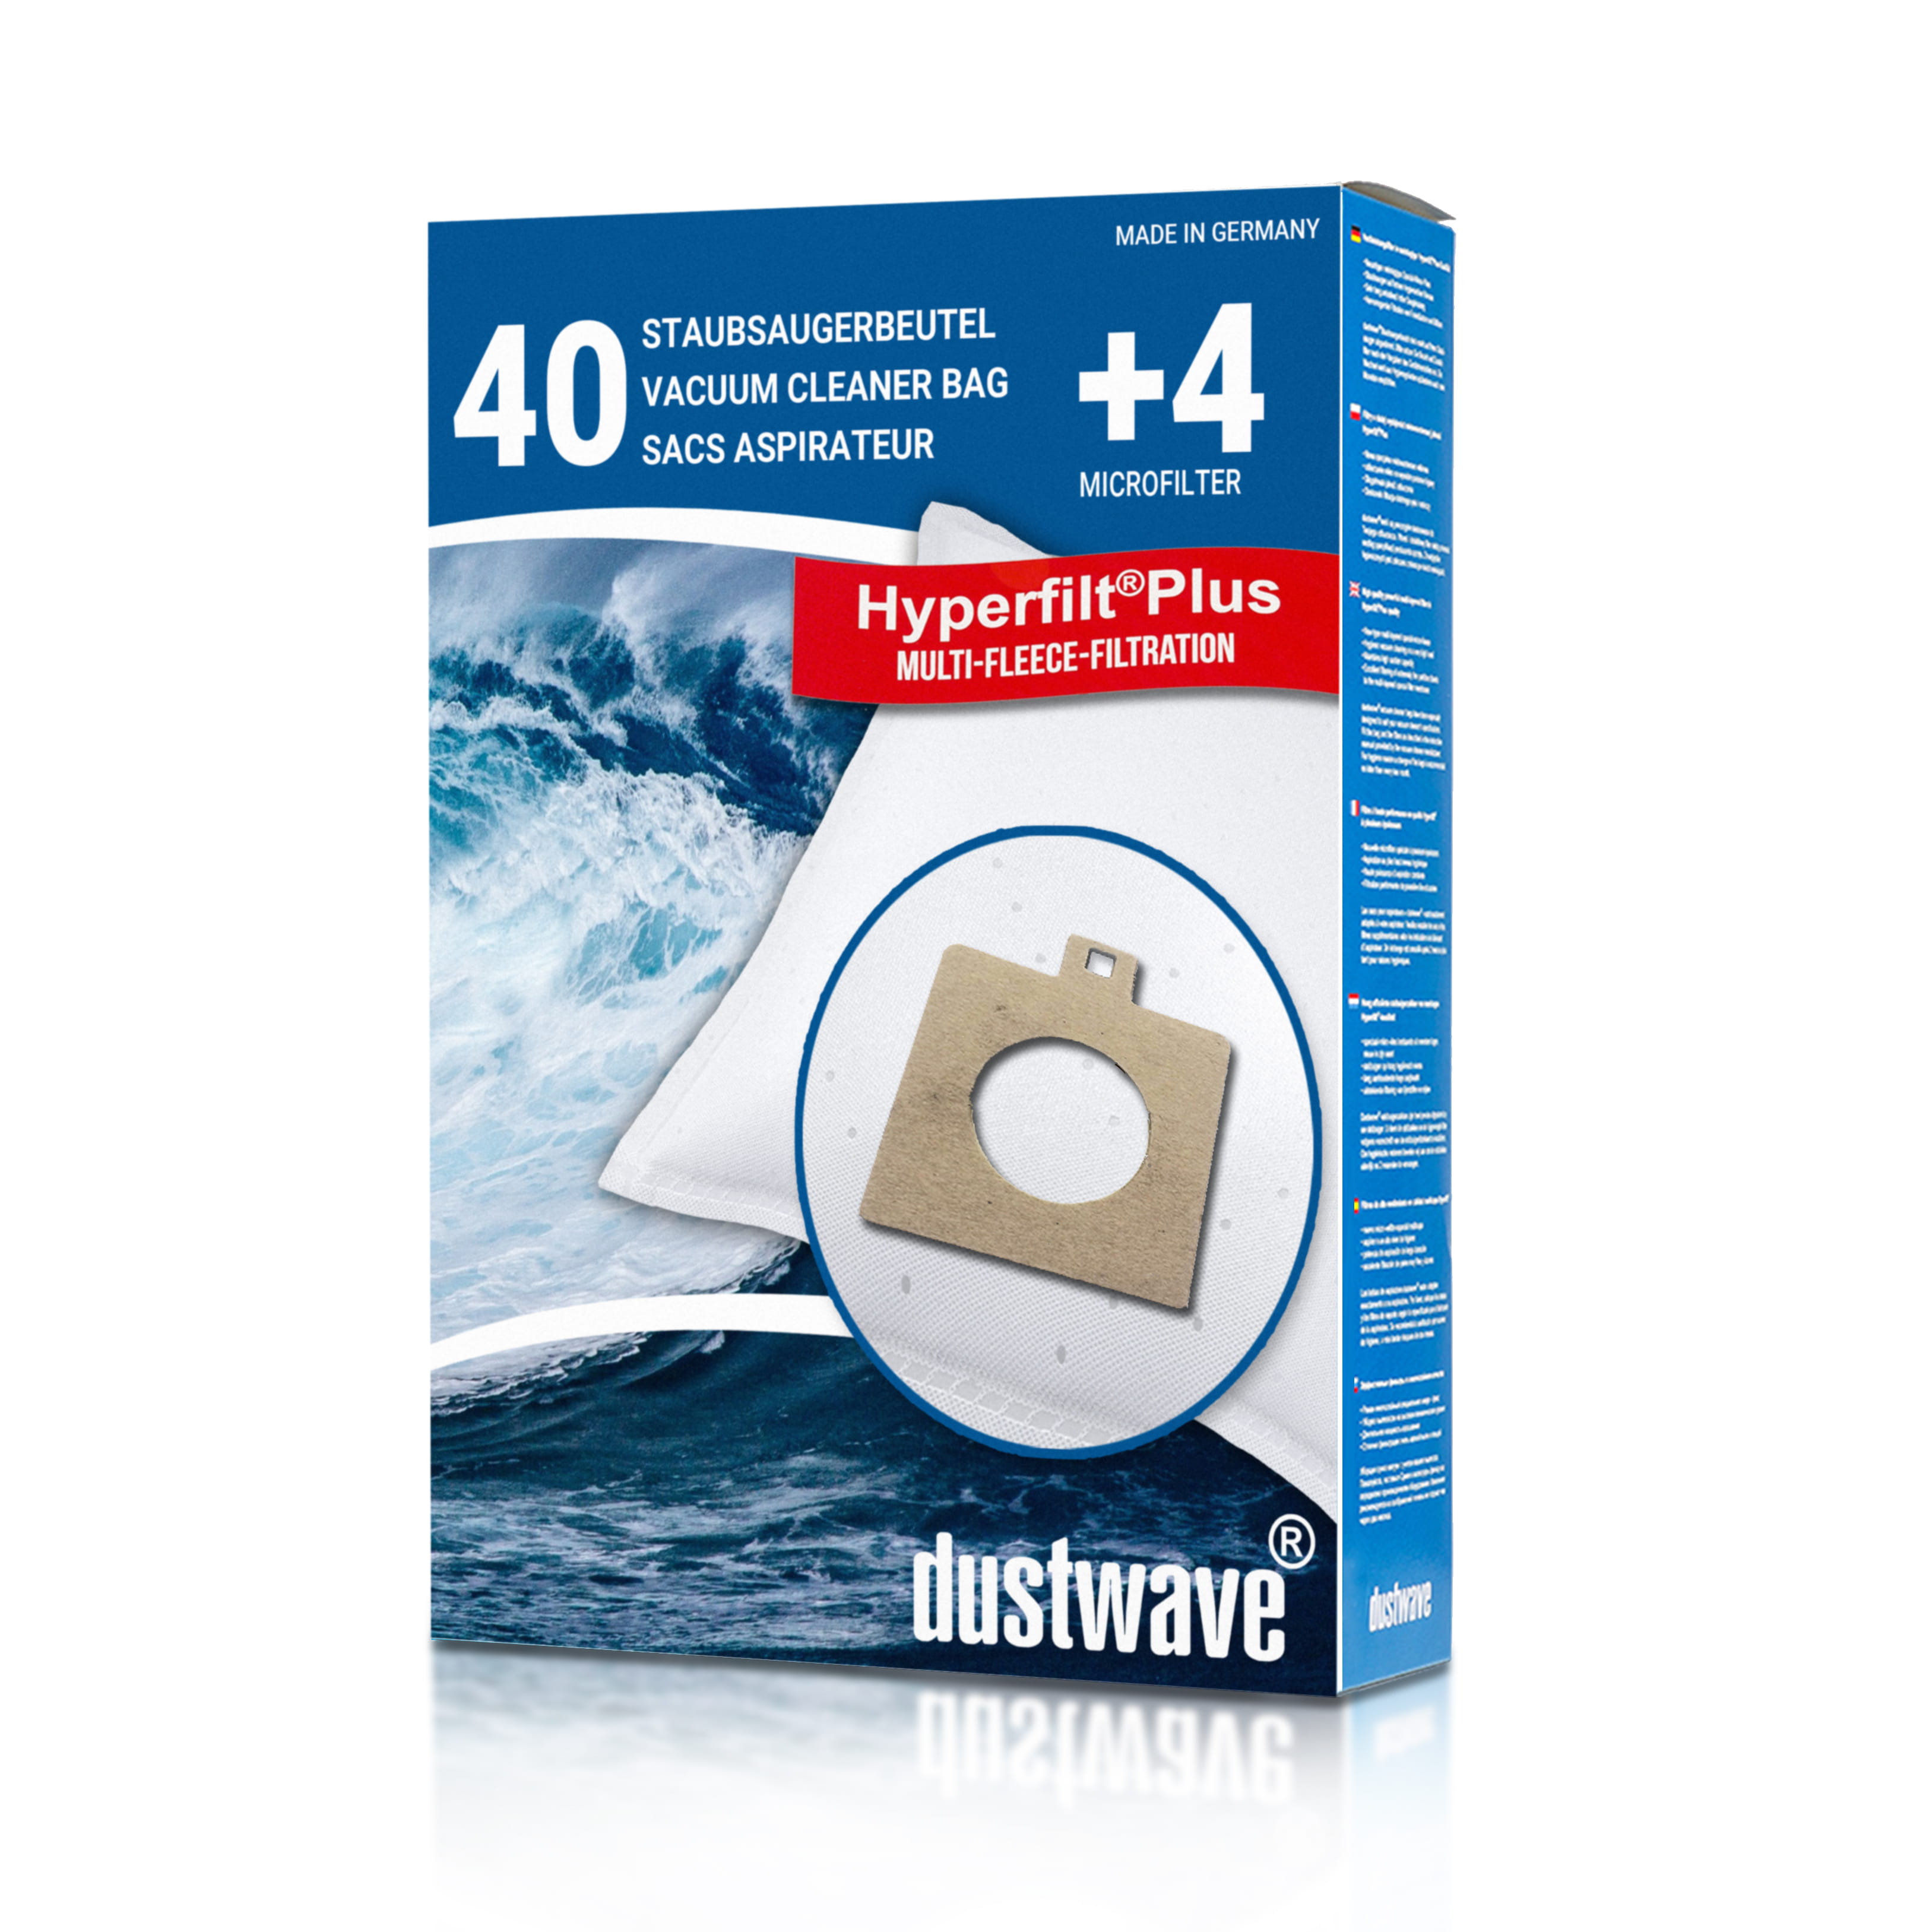 Dustwave® 40 Staubsaugerbeutel für AEG Smart 487 - hocheffizient mit Hygieneverschluss - Made in Germany